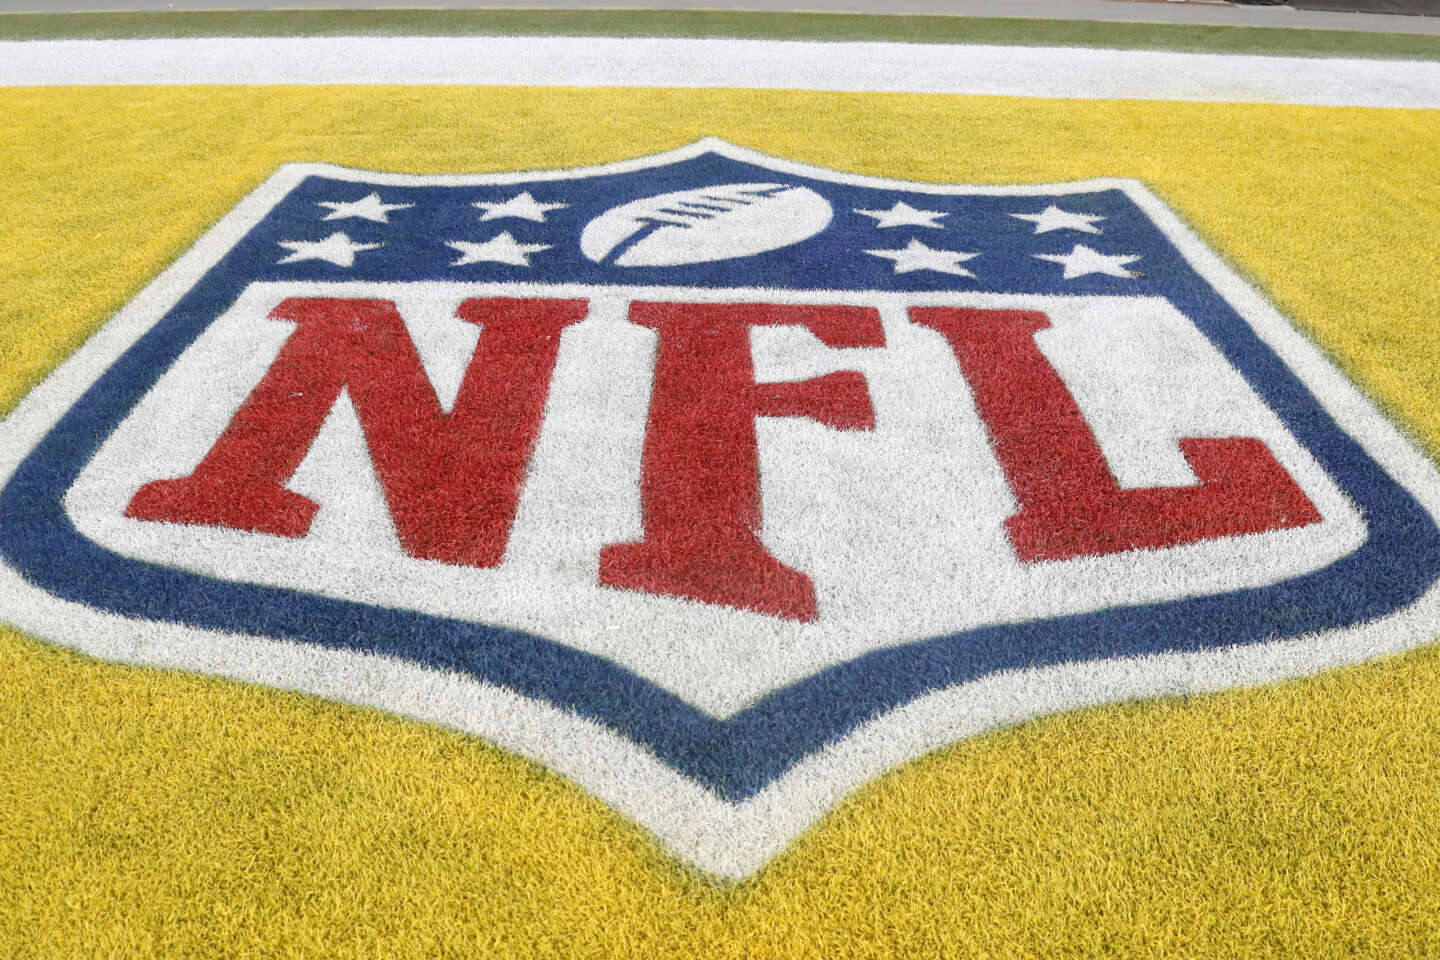 Etats-Unis : la ligue de football américain NFL condamnée à verser 4,7 milliards de dollars pour abus de position dominante